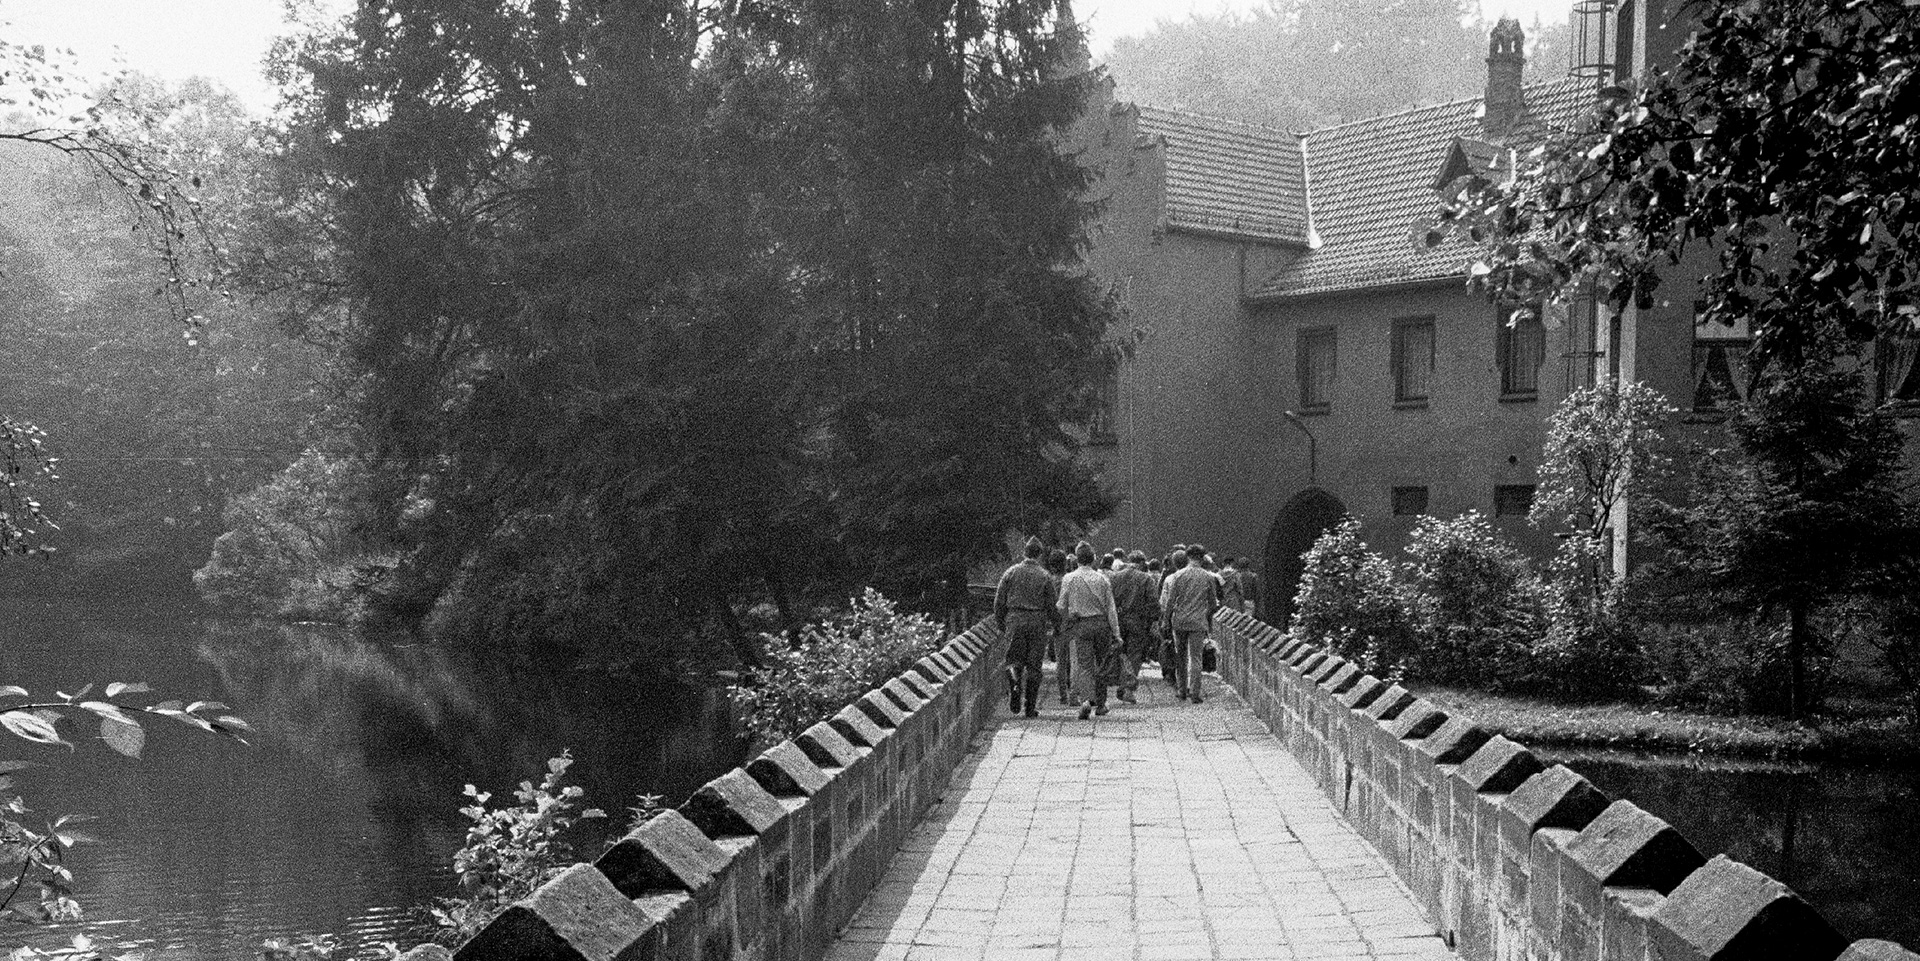 Schwarz-Weiss-Aufnahme: Blick auf Zöglinge des Jugendwerkhofs „Neues Leben“ die über Brücke zum Tor der Anlage laufen